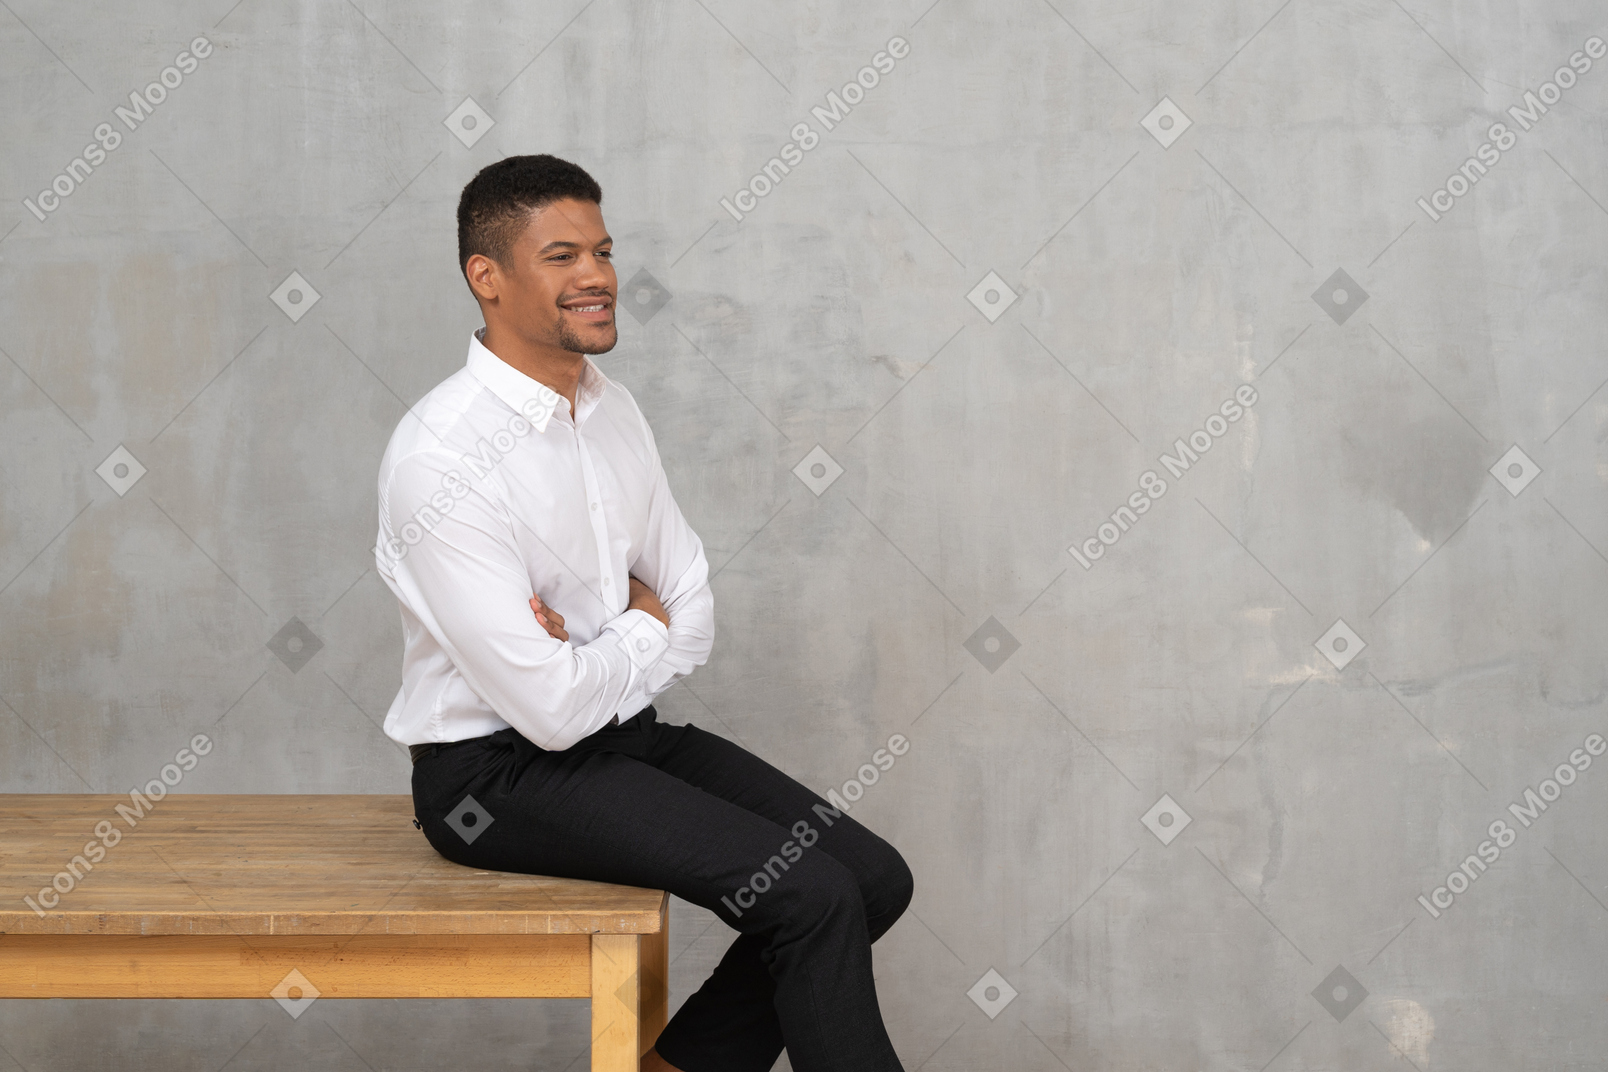 Улыбающийся мужчина в офисной одежде сидит на столе со скрещенными руками